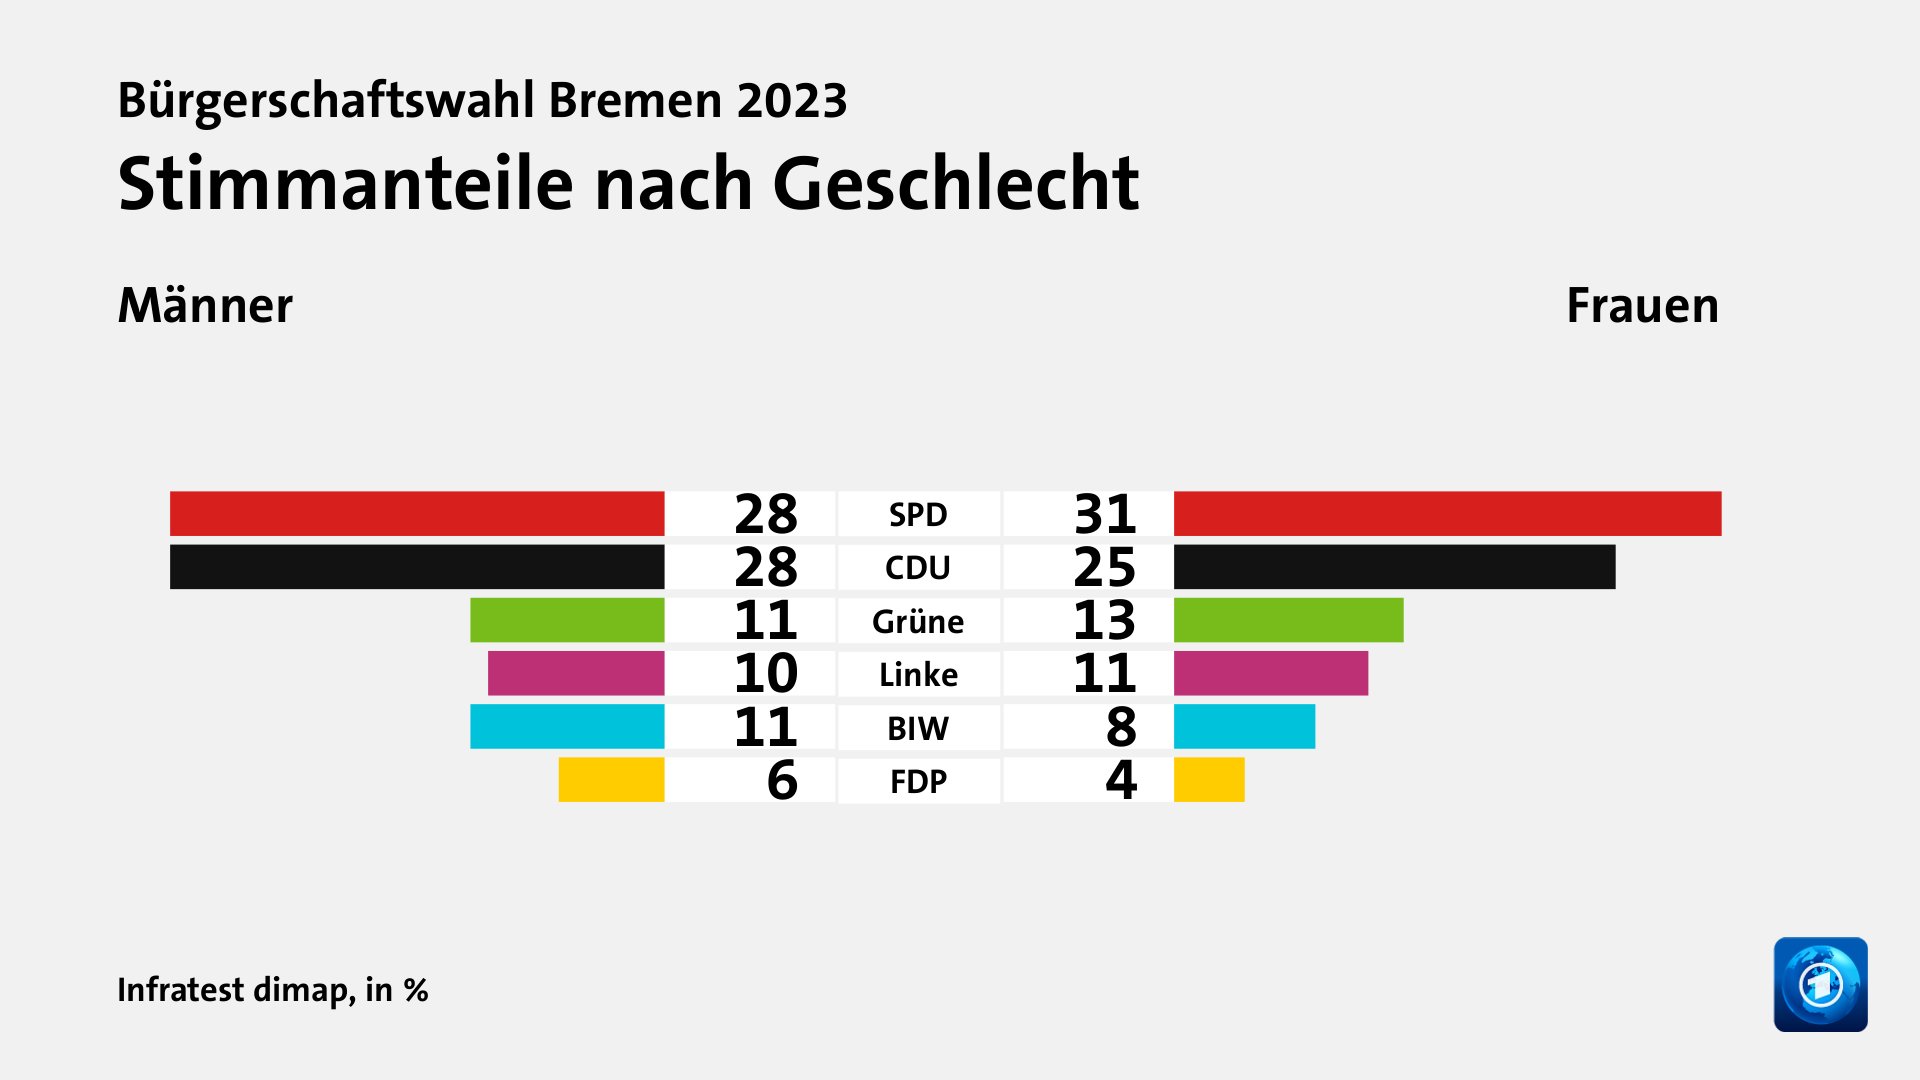 Stimmanteile nach Geschlecht (in %) SPD: Männer 28, Frauen 31; CDU: Männer 28, Frauen 25; Grüne: Männer 11, Frauen 13; Linke: Männer 10, Frauen 11; BIW: Männer 11, Frauen 8; FDP: Männer 6, Frauen 4; Quelle: Infratest dimap